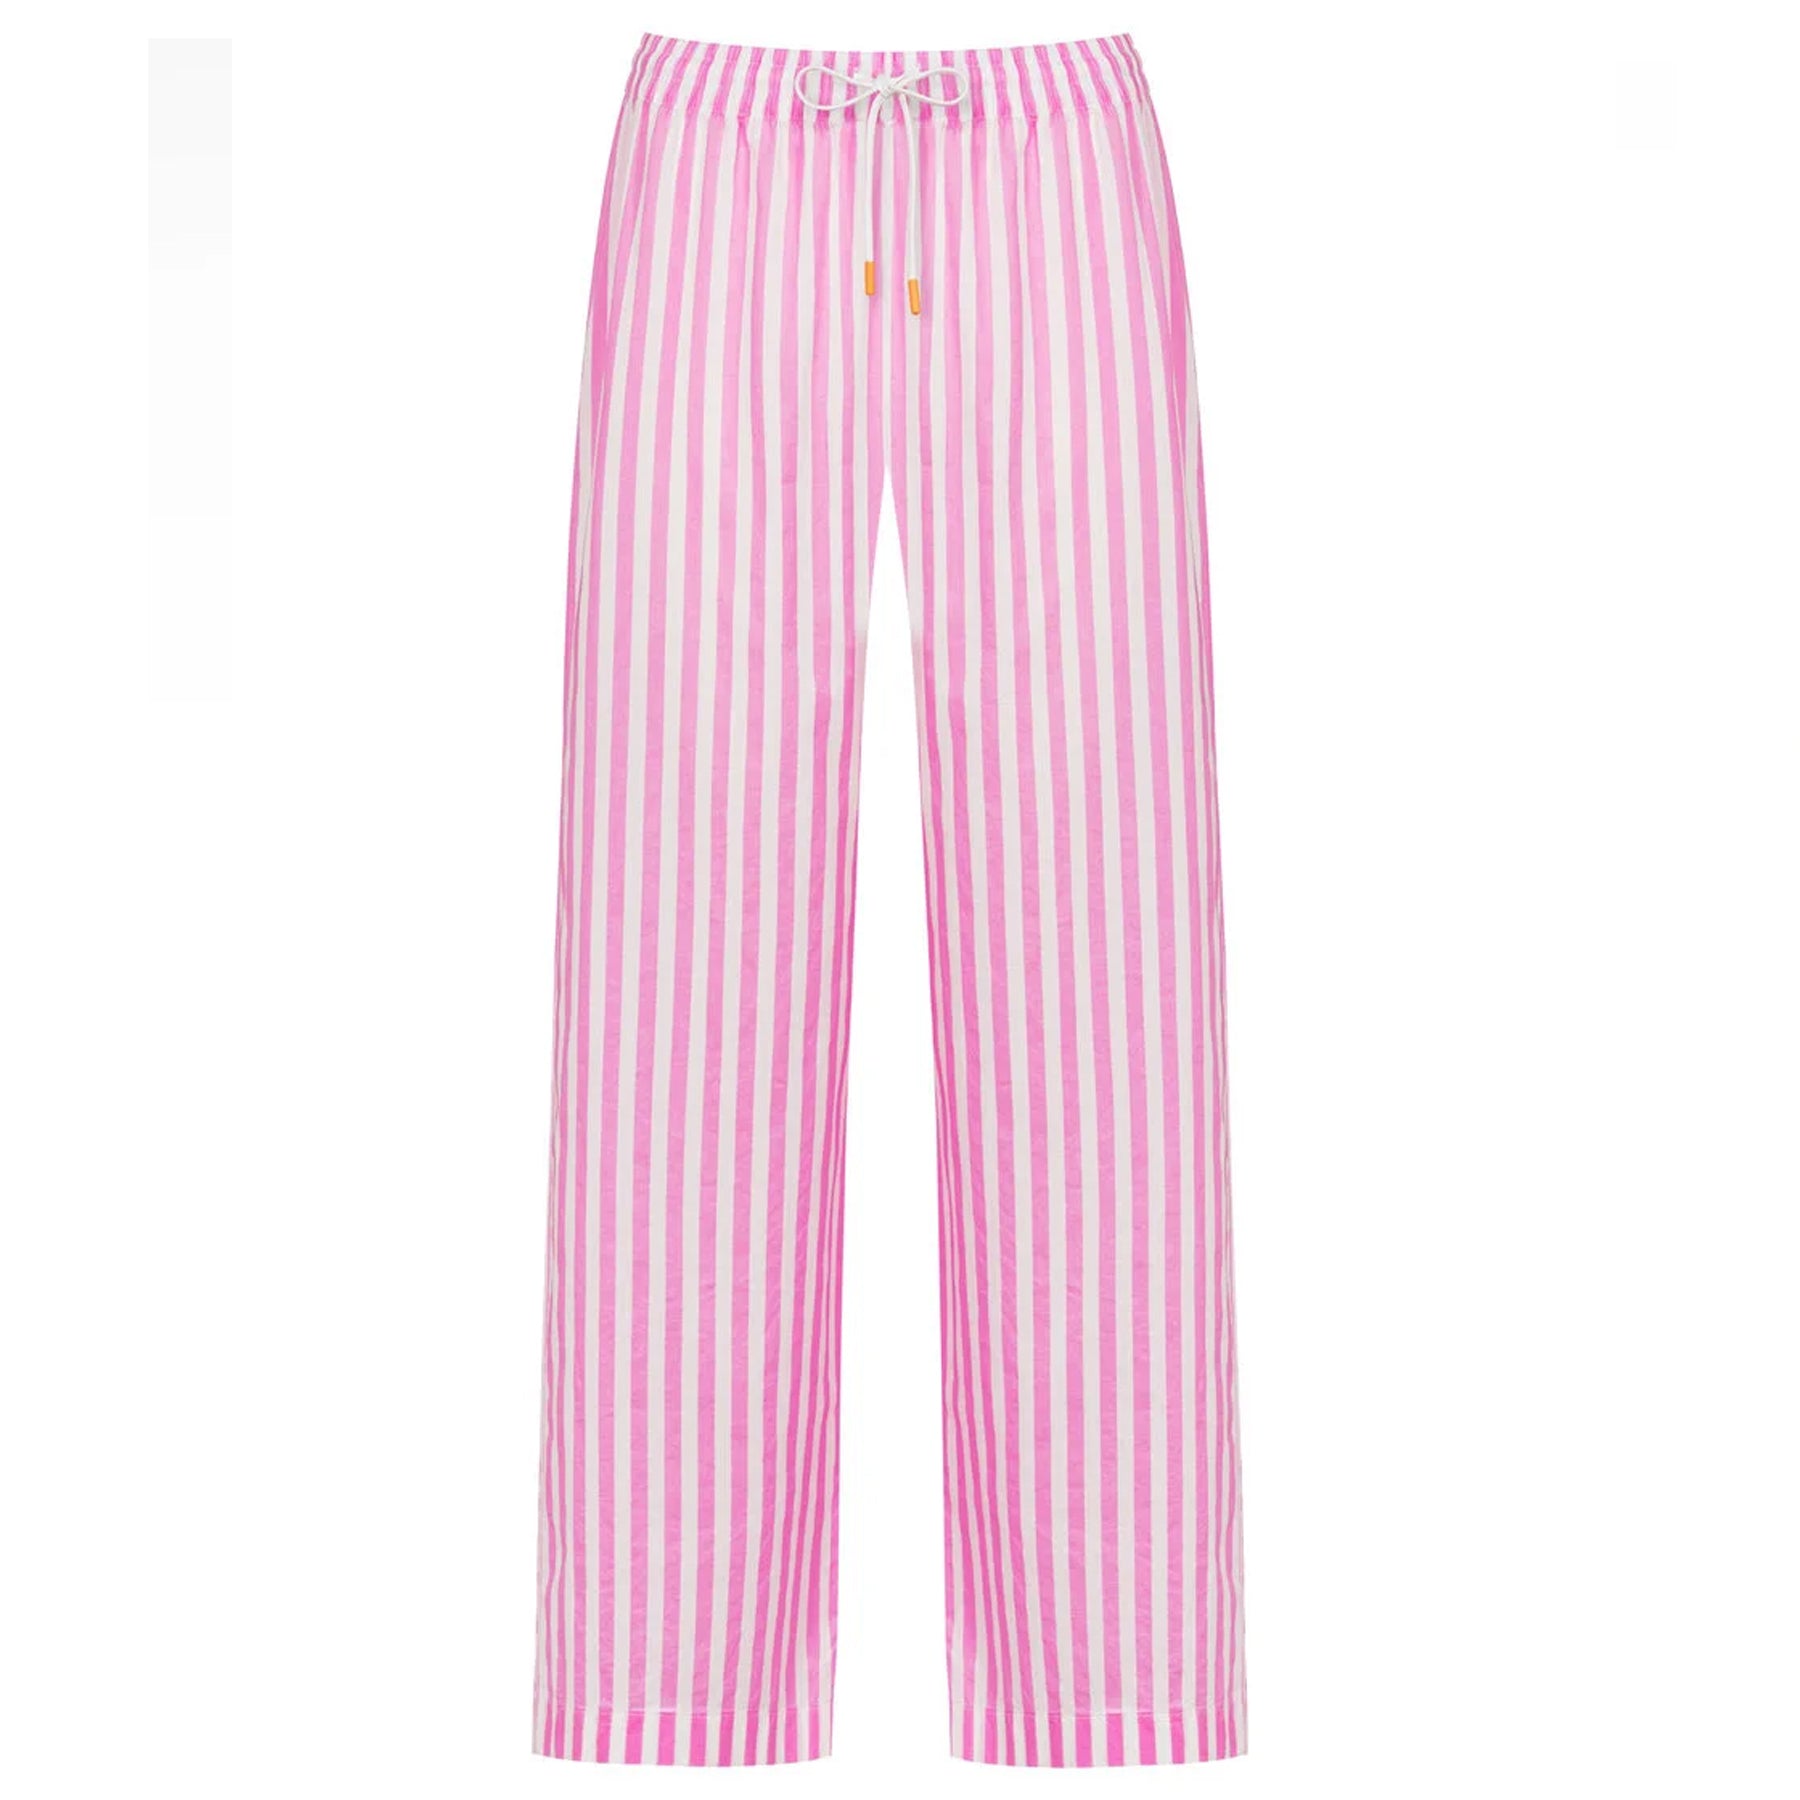 Splendid Speckled Lounge Pants Peach Multi XL (Women's 14-16)